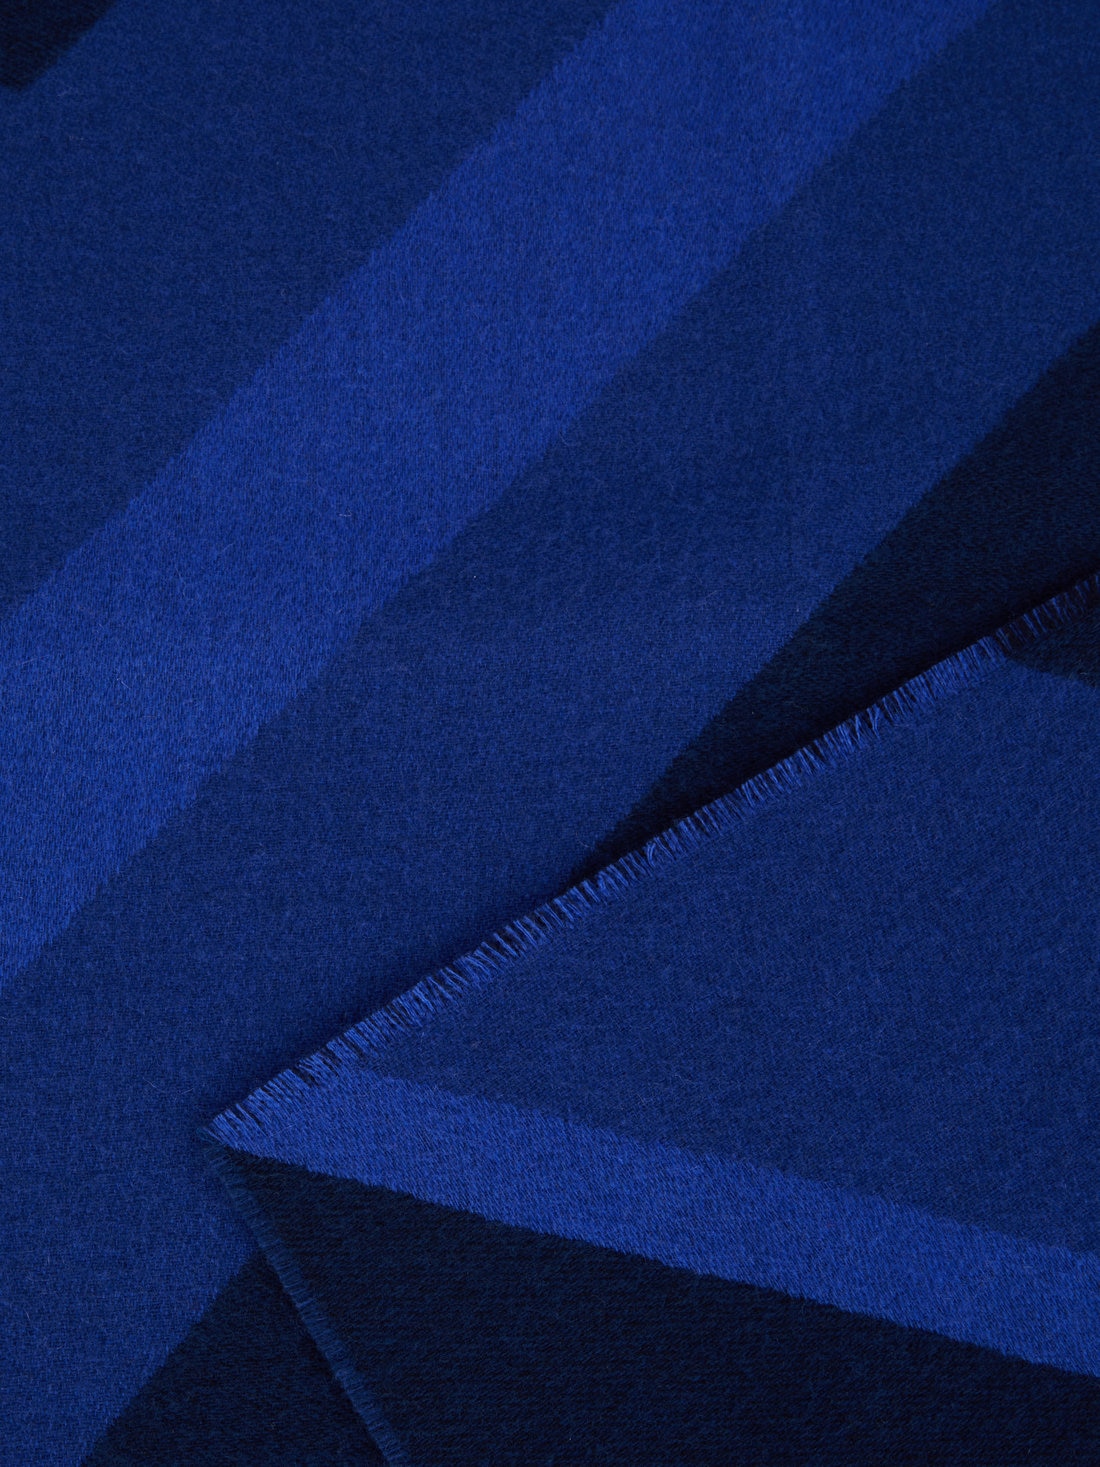 Plaid Cornelio 130x190 cm aus Wolle mit Zickzacklinien, Blau - 8051575843266 - 2